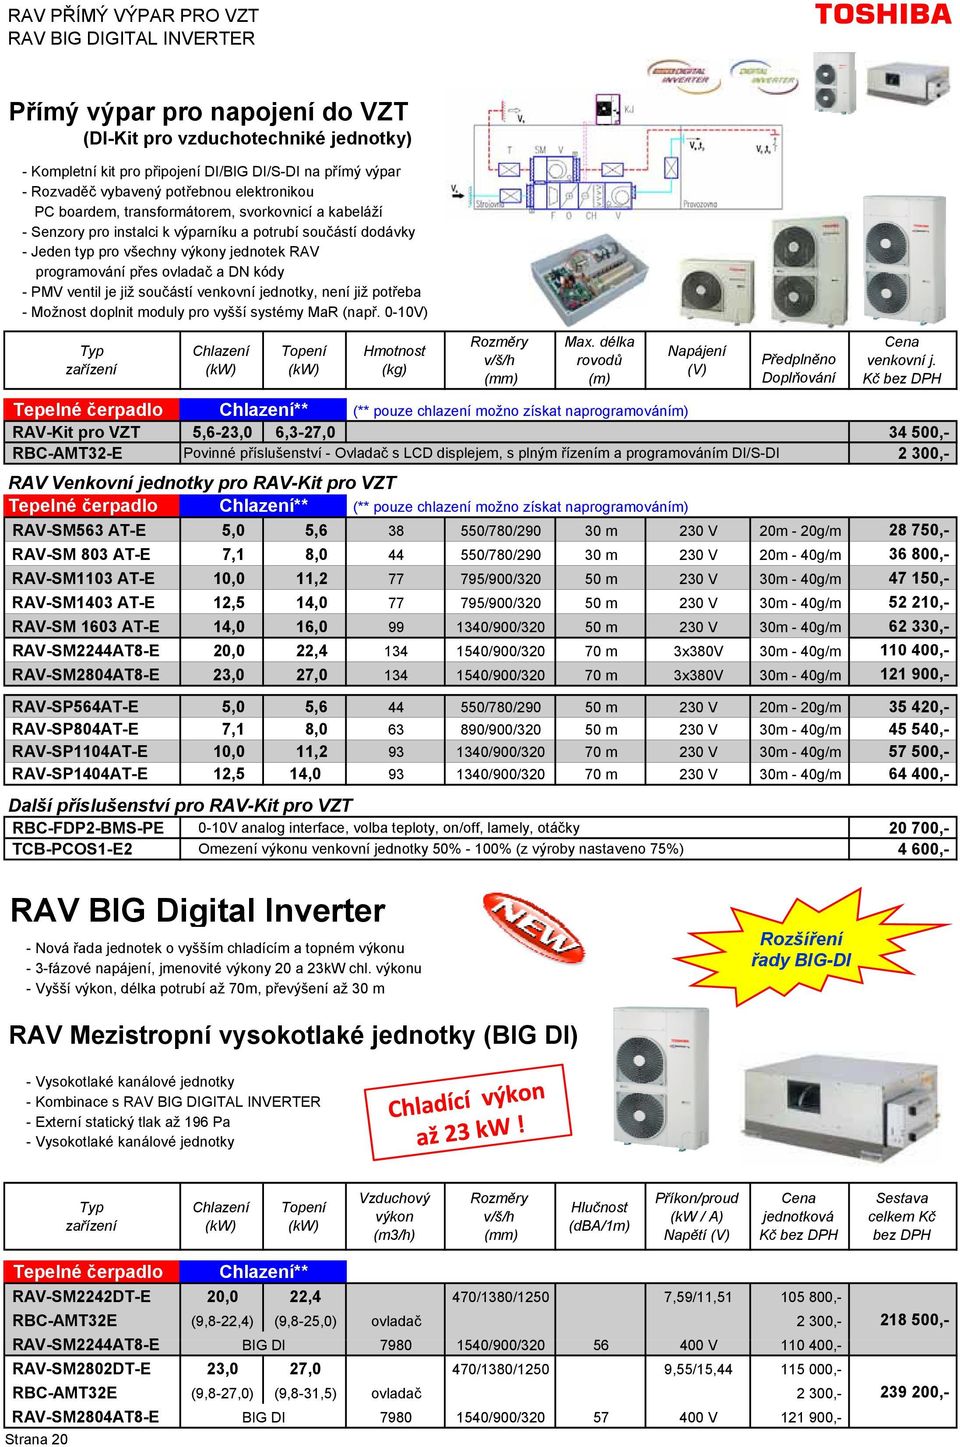 ovladač a DN kódy - PMV ventil je již součástí venkovní jednotky, není již potřeba - Možnost doplnit moduly pro vyšší systémy MaR (např. 0-10V) zařízení Chlazení Topení Hmotnost (kg) Rozměry Max.